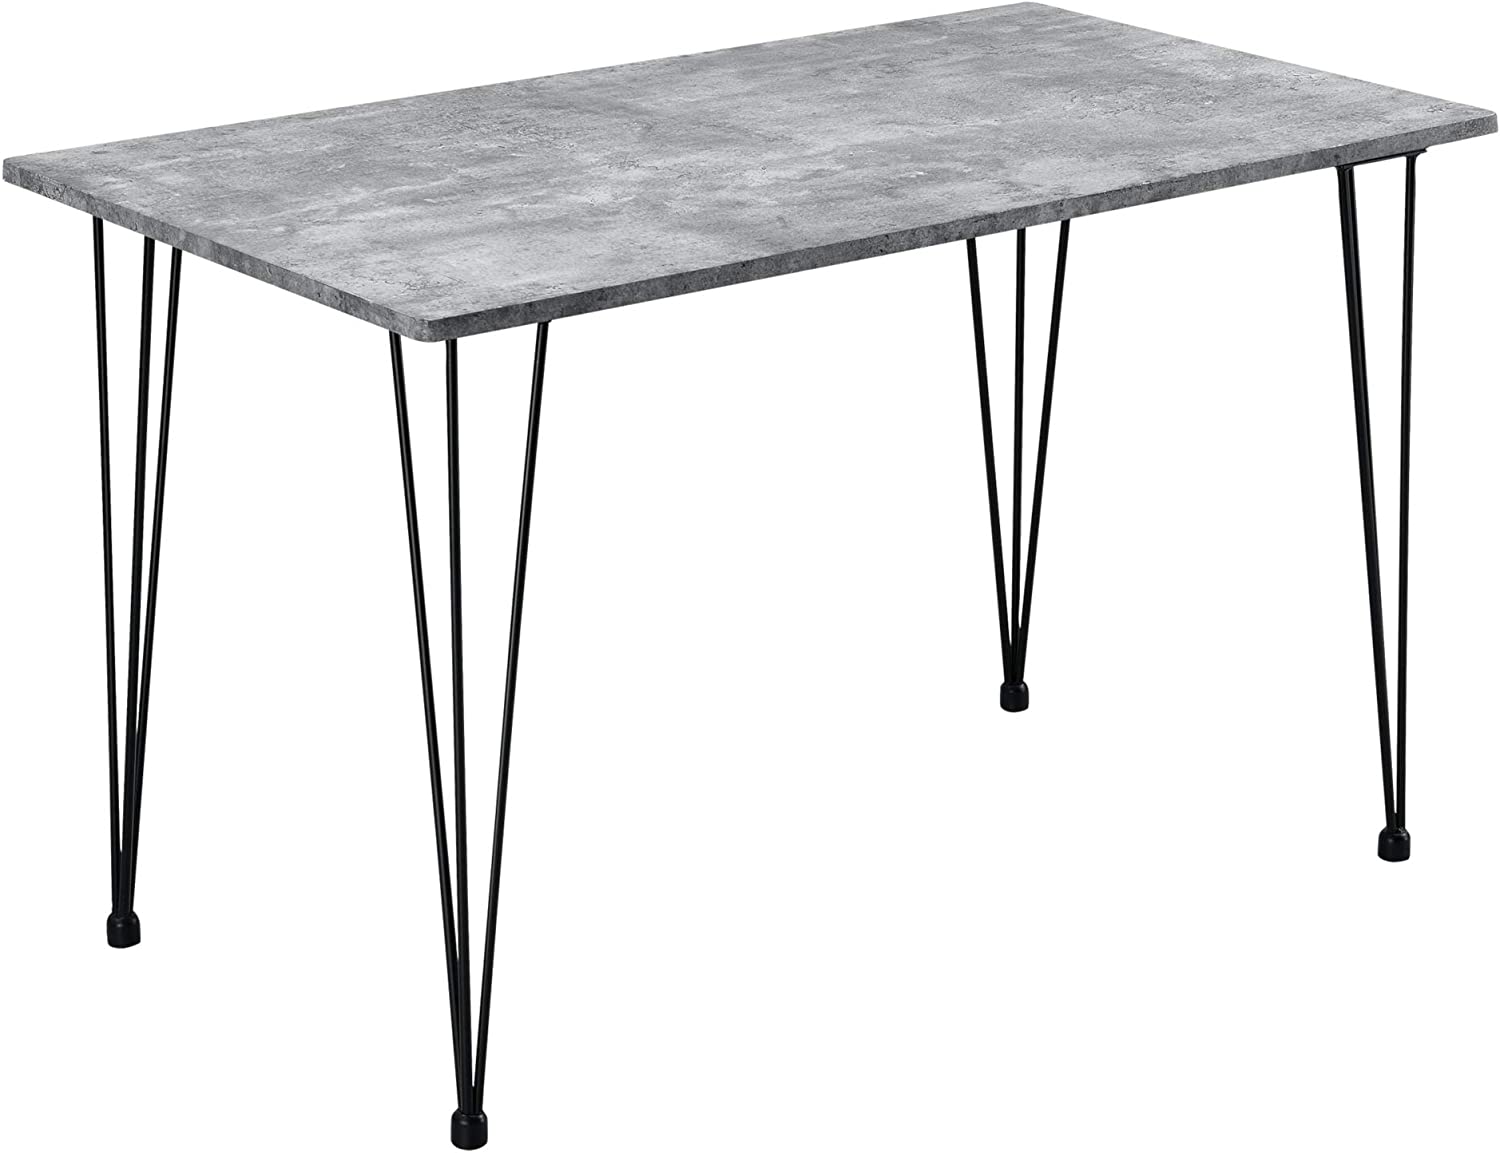 La table de salle à manger de 120 x 70 x 75 cm pour 4 personnes est fabriquée en MDF durable et avec des pieds en acier, ce qui en fait un meuble très résistant